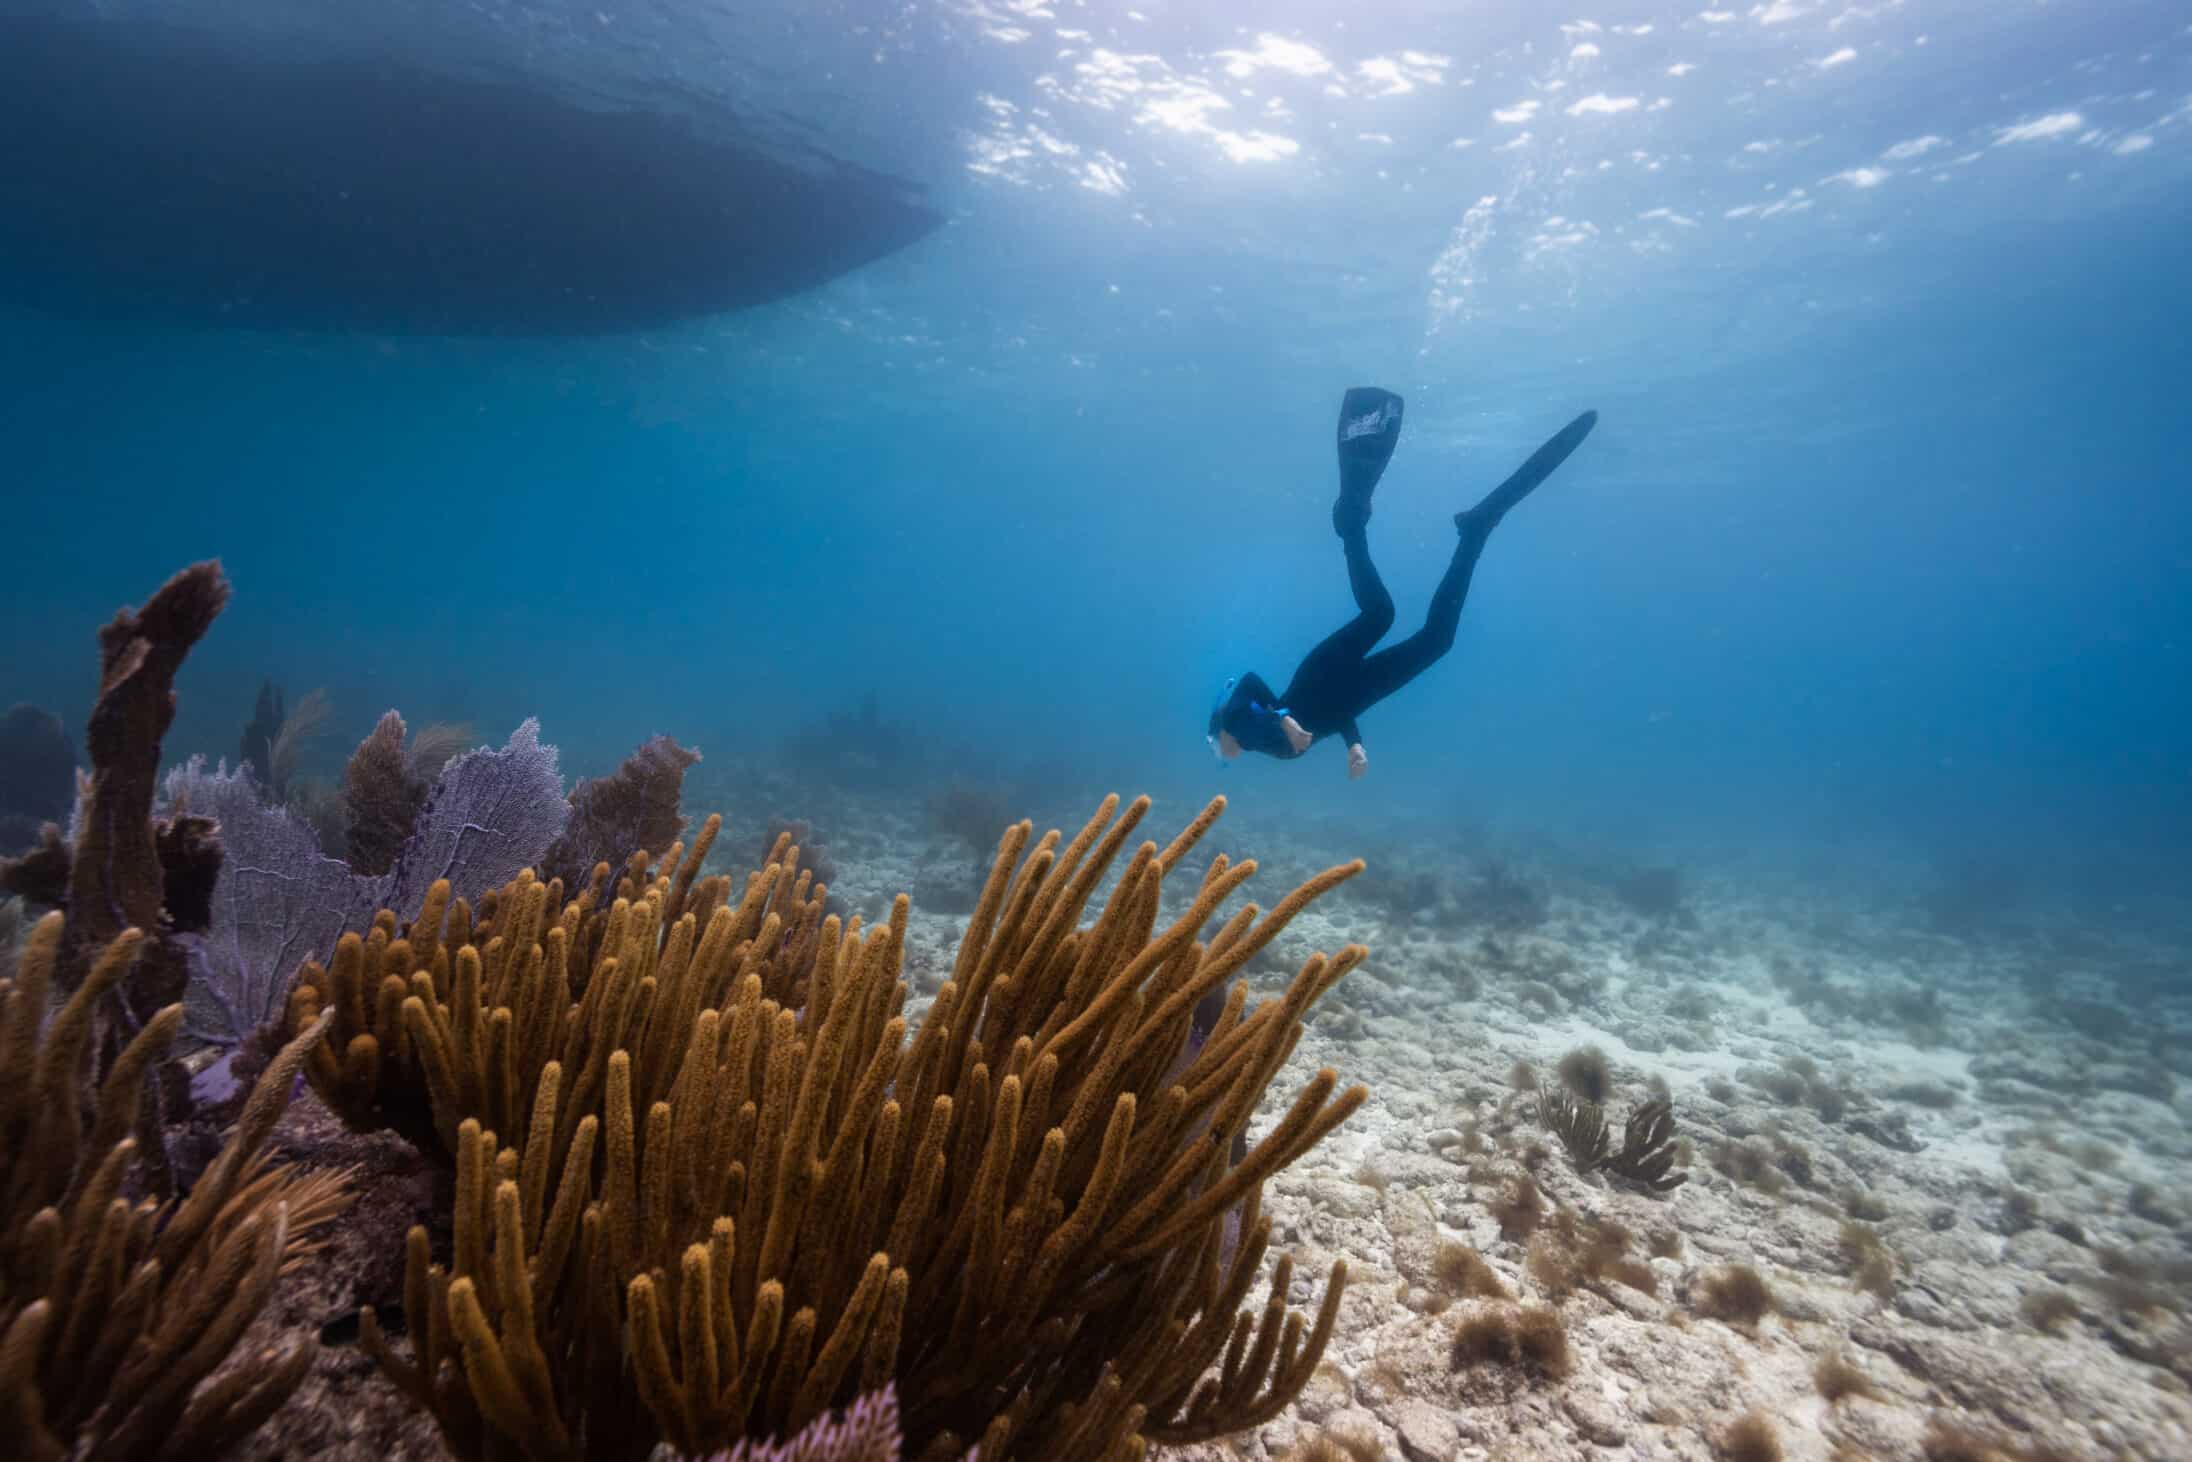 Freediver near corals and algae